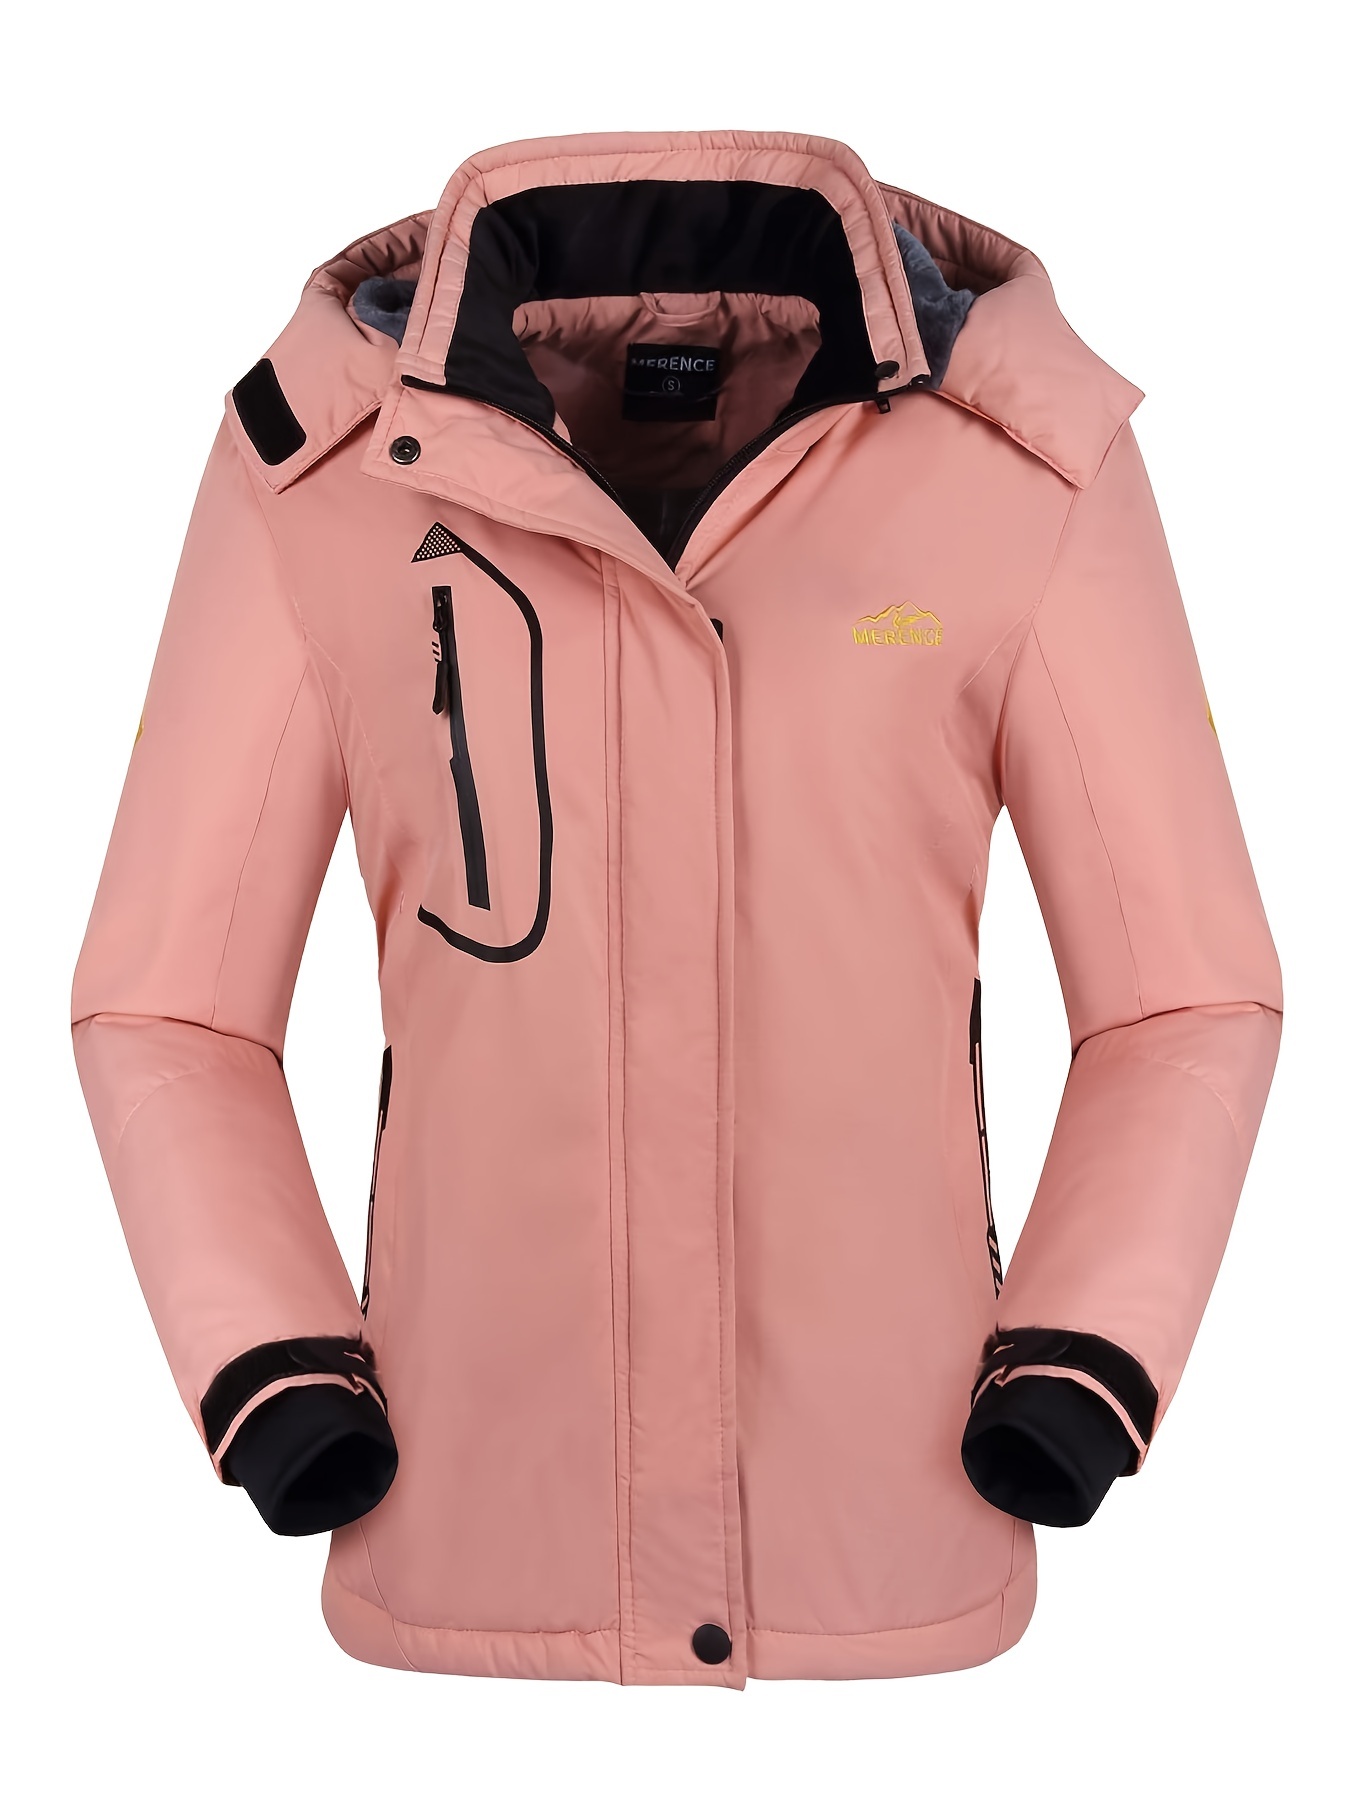  MOERDENG Women's Waterproof Ski Jacket Warm Winter Snow Coat  Mountain Windbreaker Hooded Raincoat Jacket : Clothing, Shoes & Jewelry